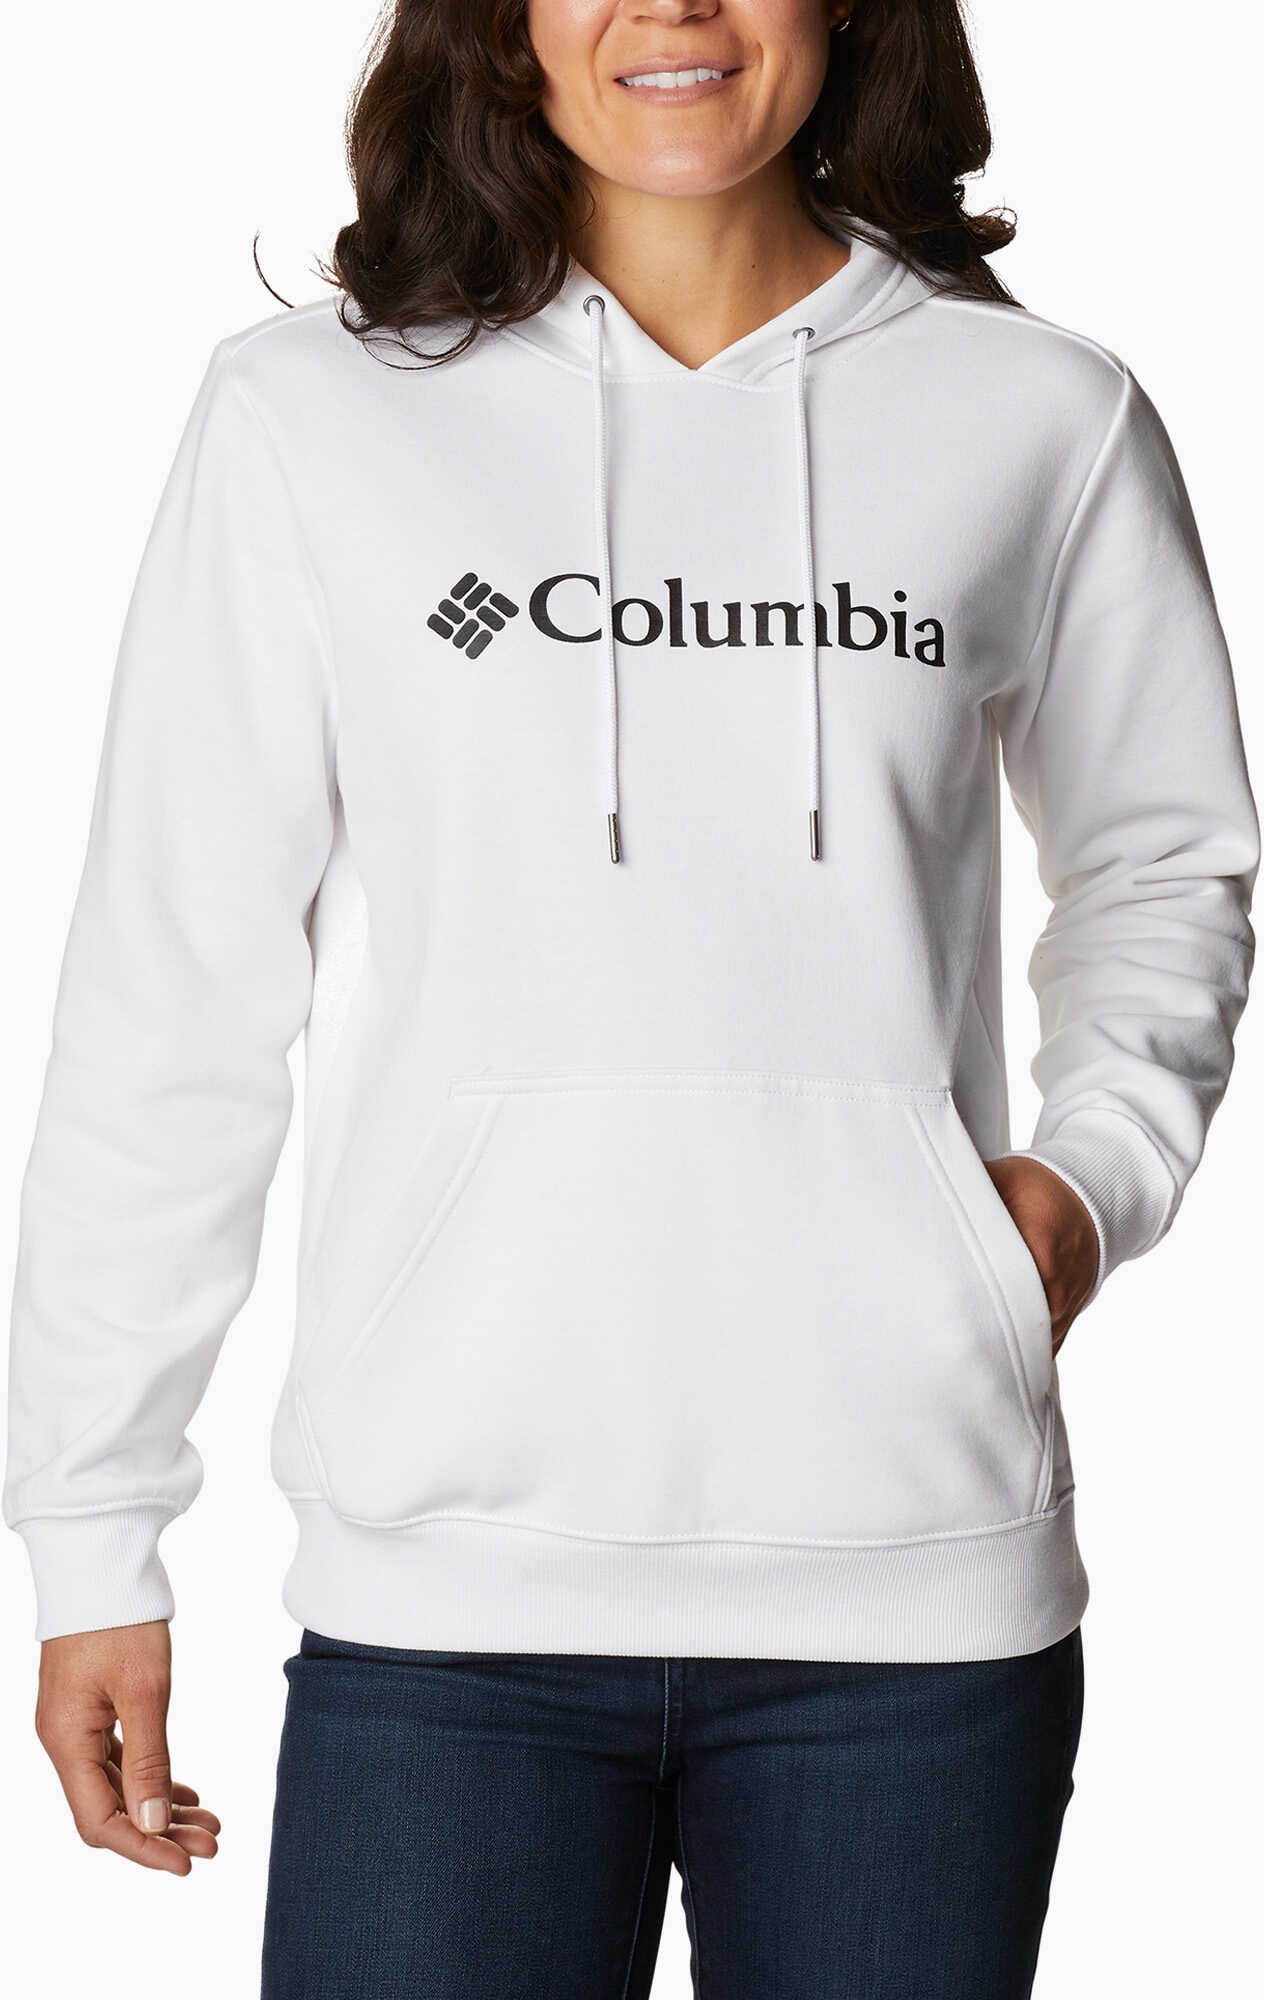 Bluza trekkingowa damska Columbia Logo biała 1895751 WYSYŁKA W 24H 30 DNI NA ZWROT